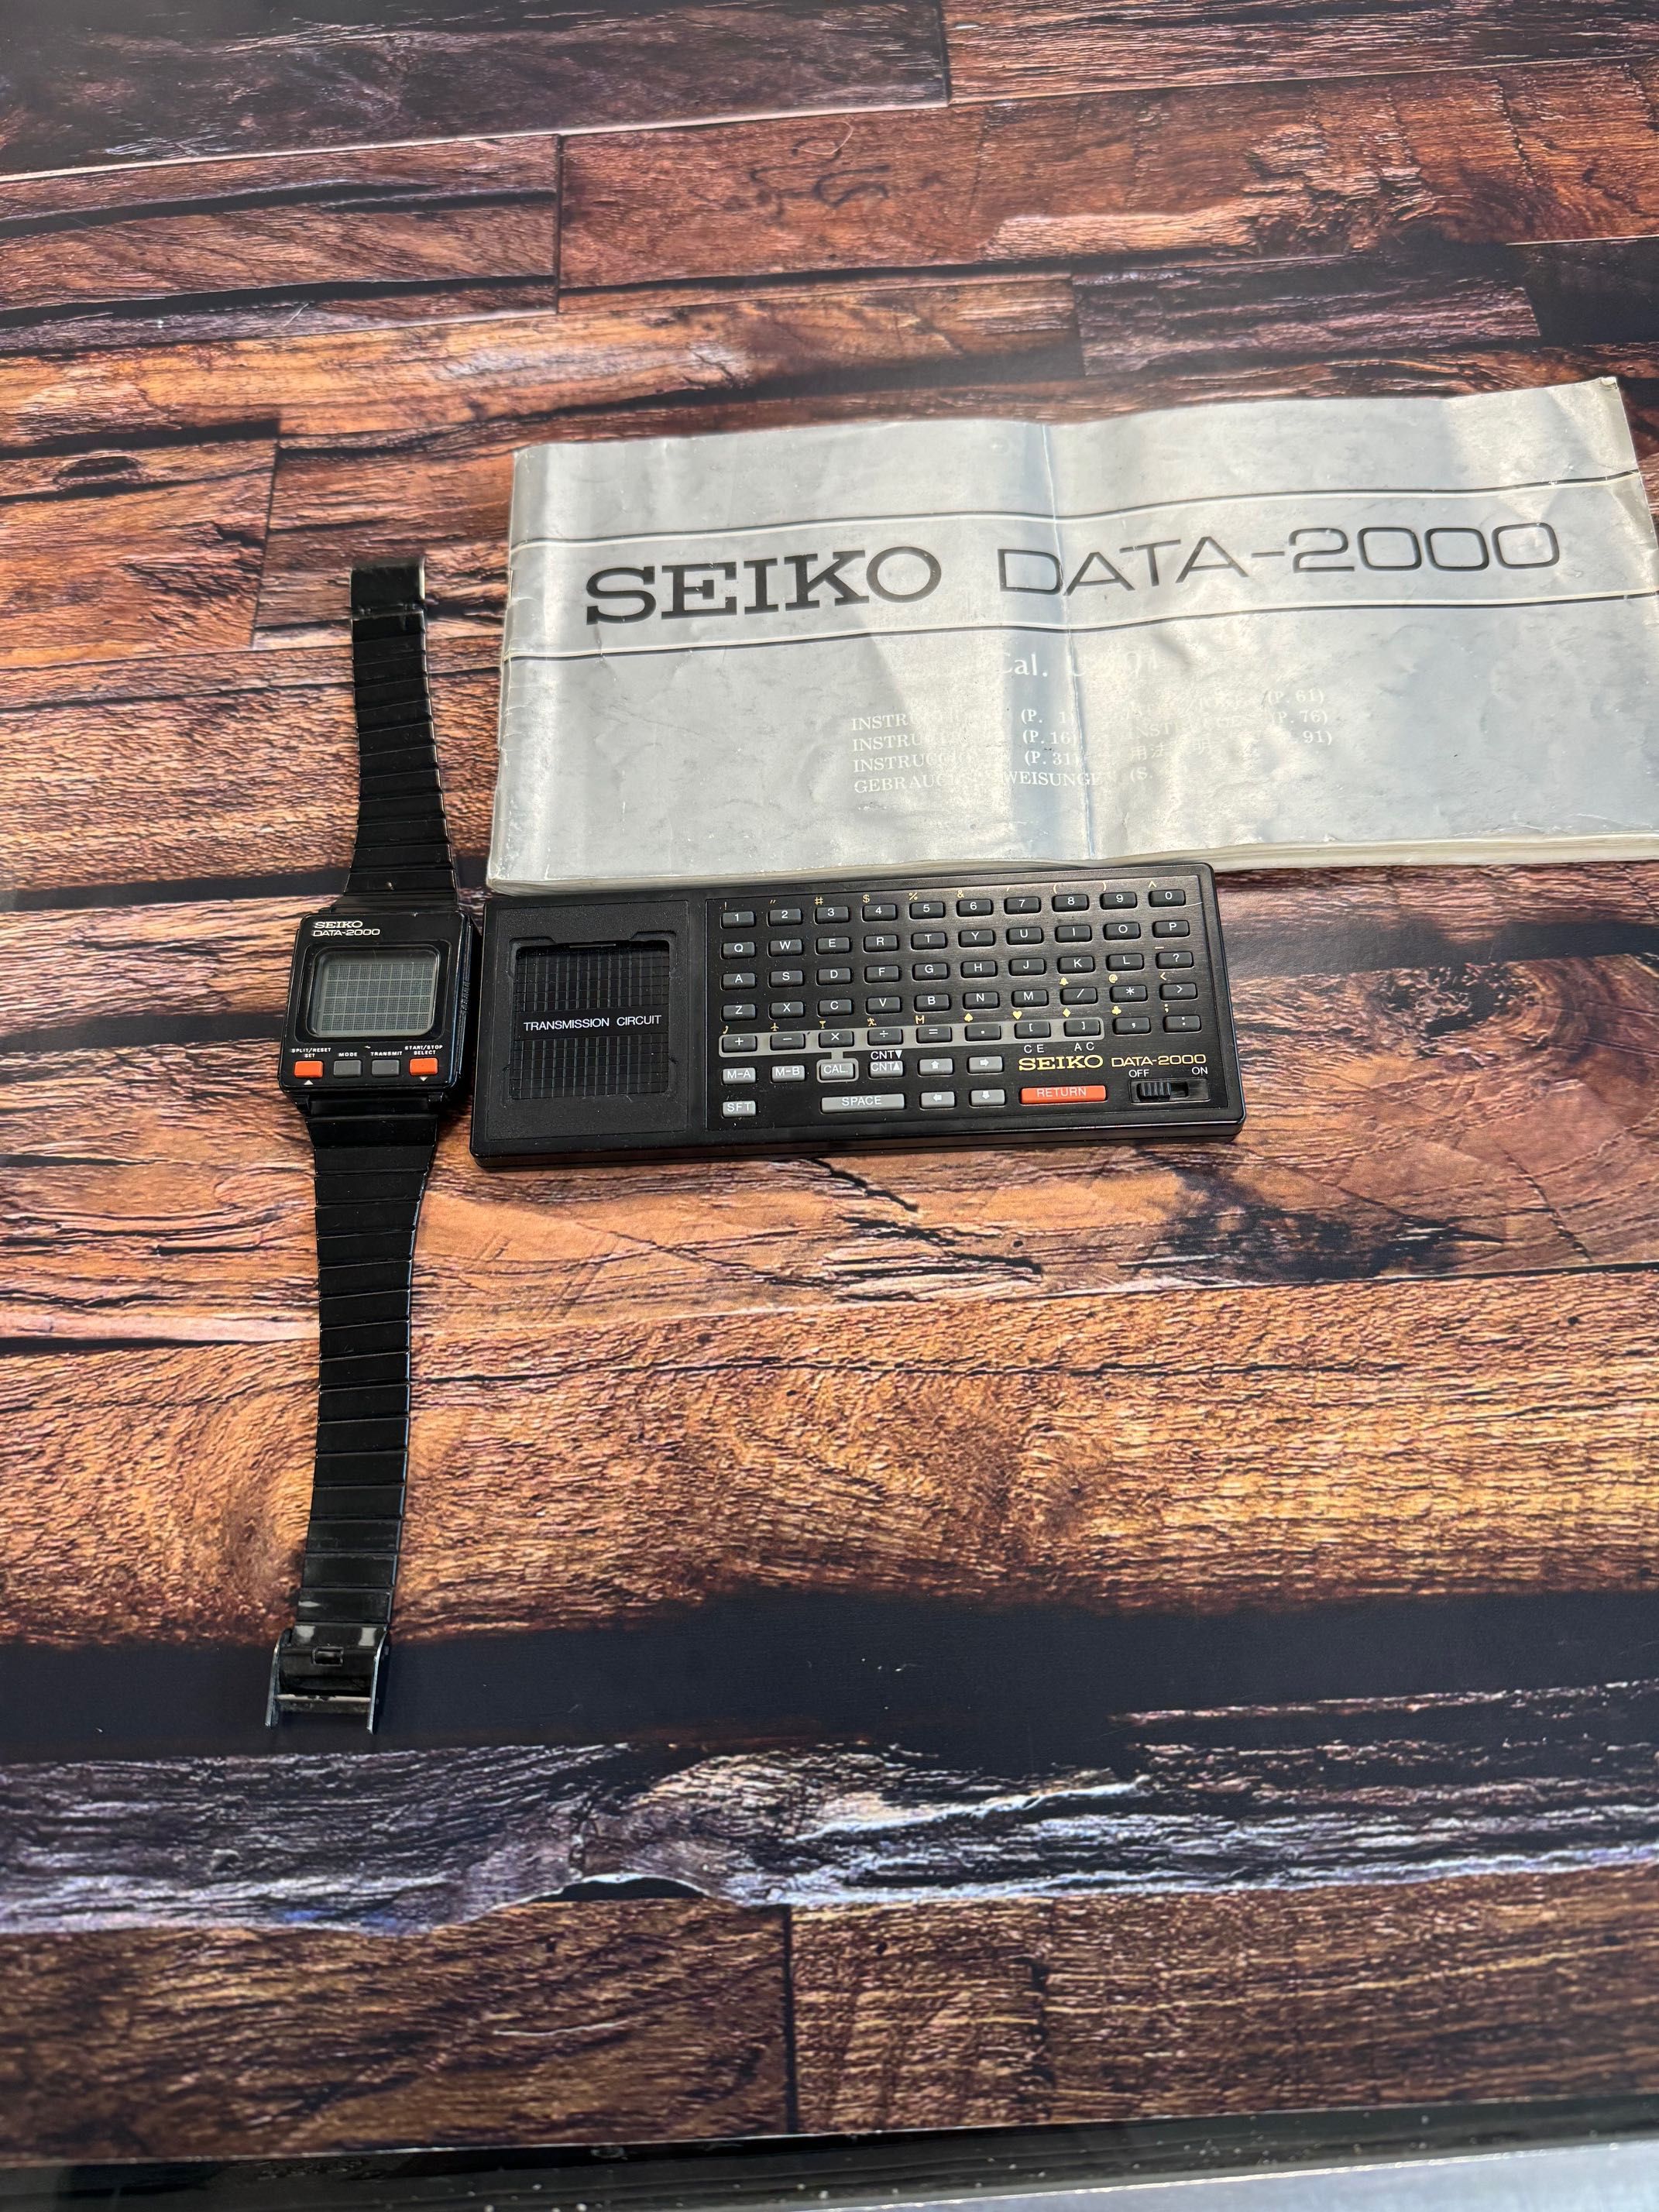 Seiko DATA-2000 vintage